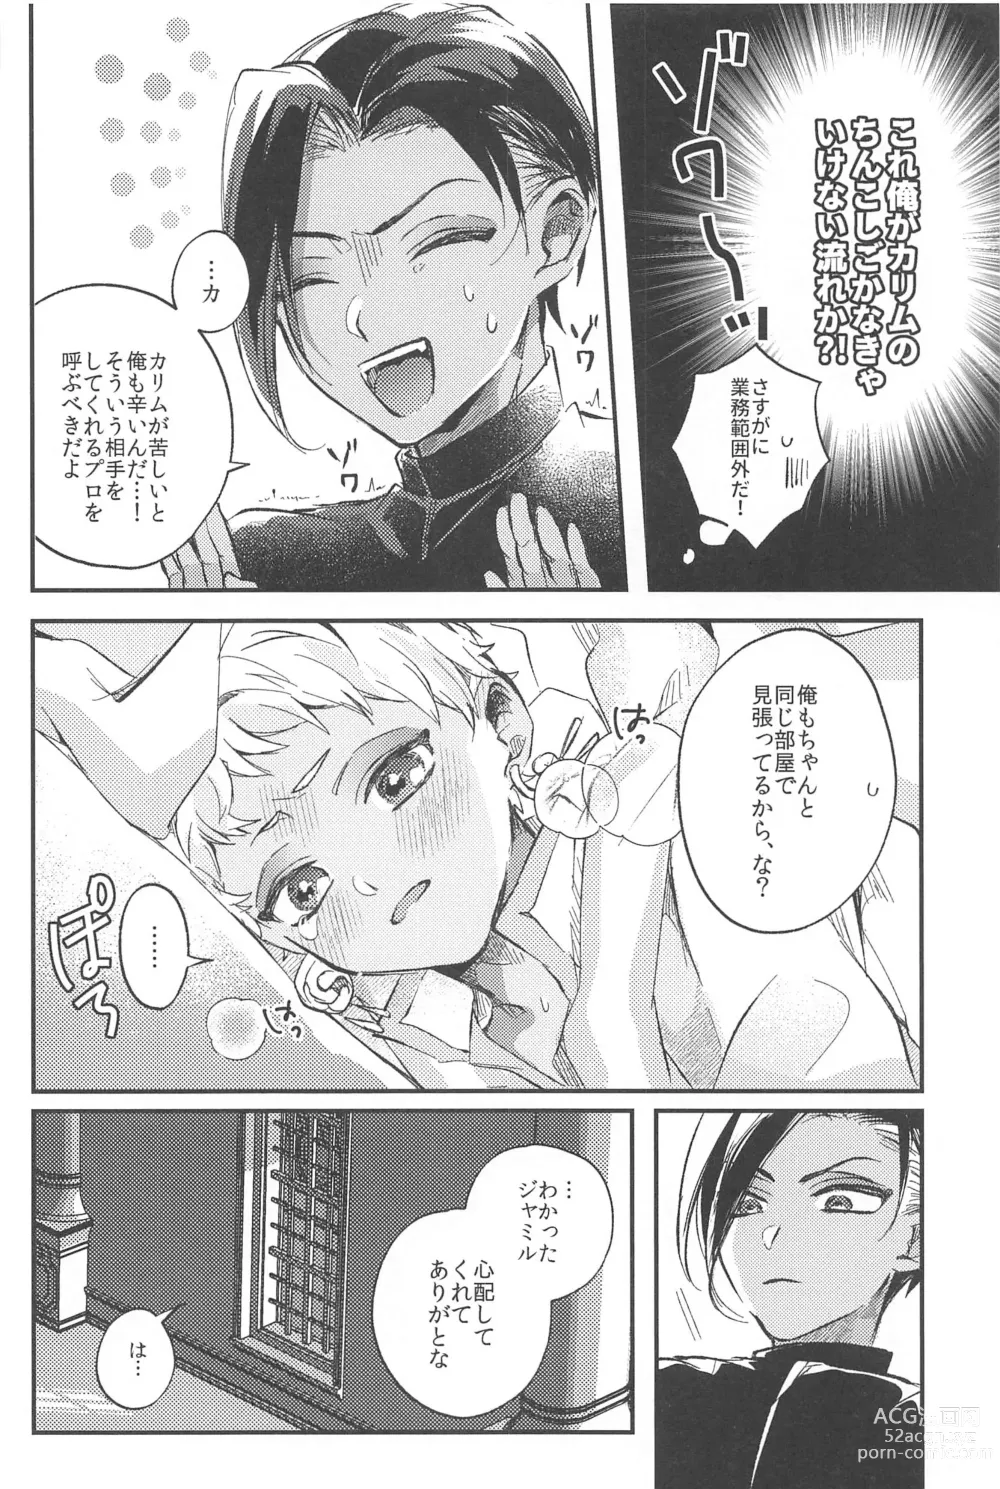 Page 56 of doujinshi Kantan dakara Muzukashii